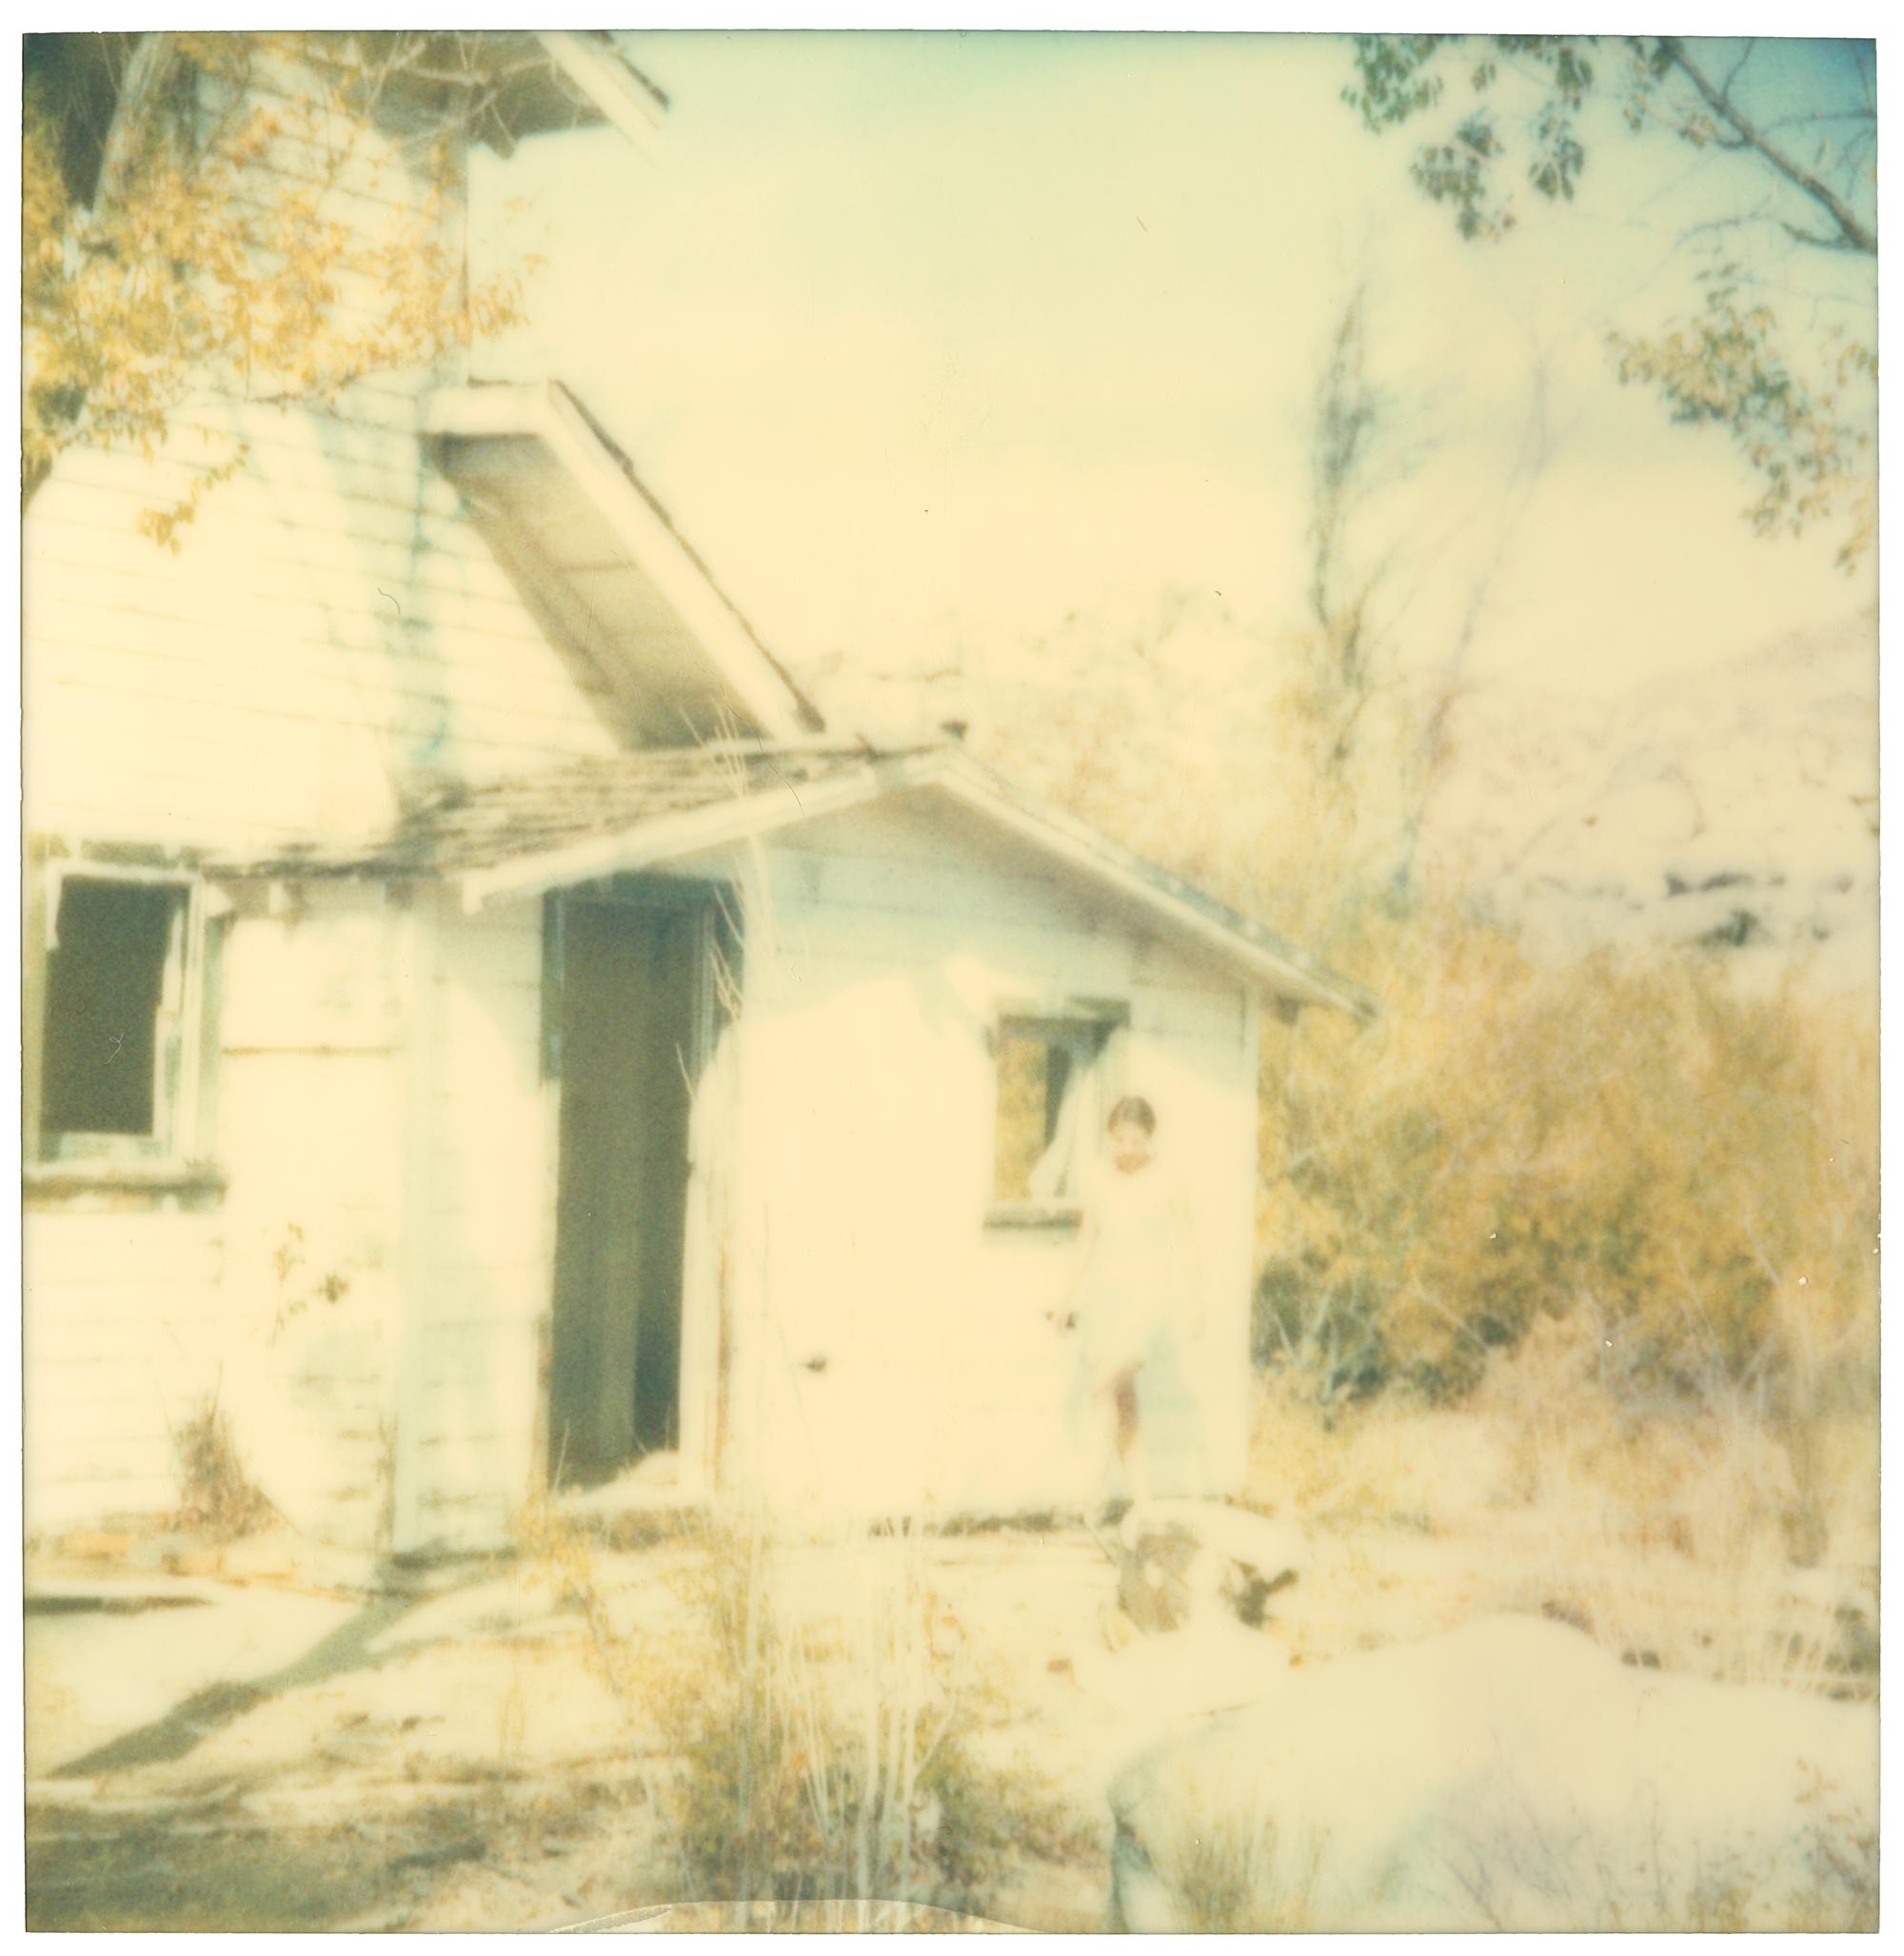 Last Season (Wastelands), diptych, analog - Photograph by Stefanie Schneider